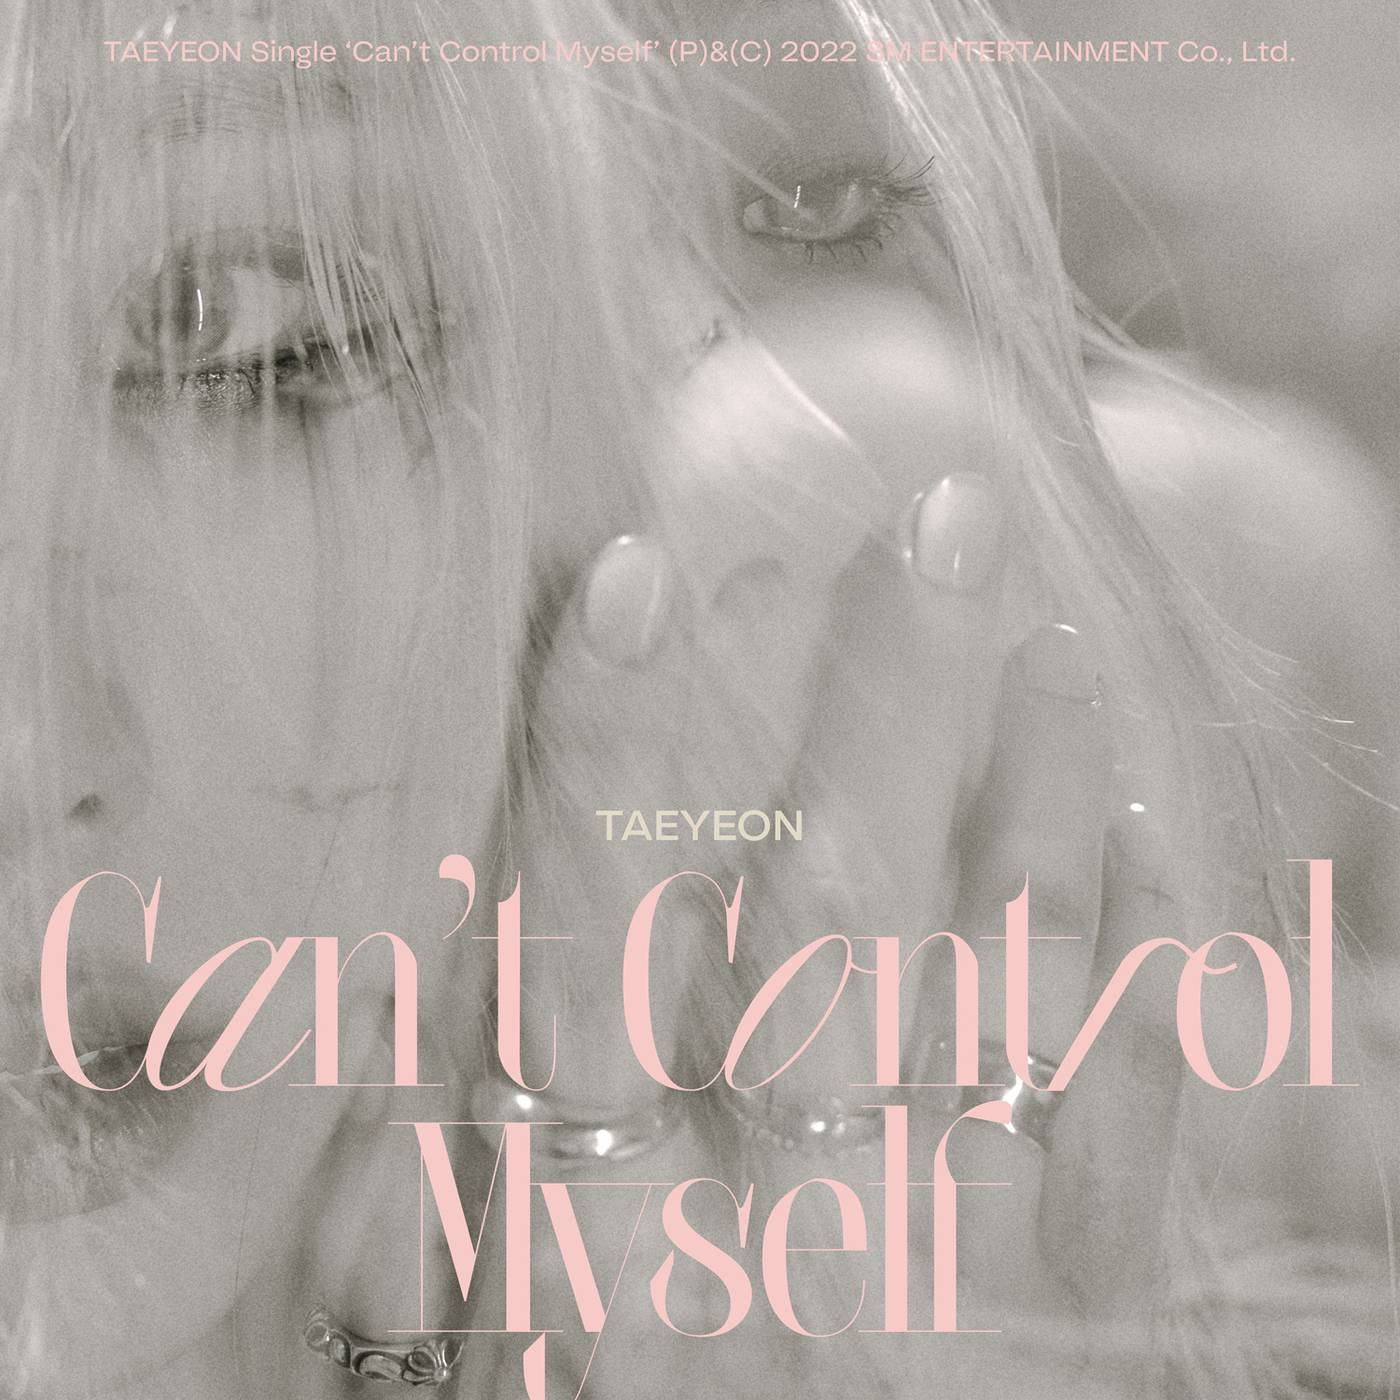 17일(월), 태연 선공개 싱글 'Can't Control Myself' 발매 | 인스티즈